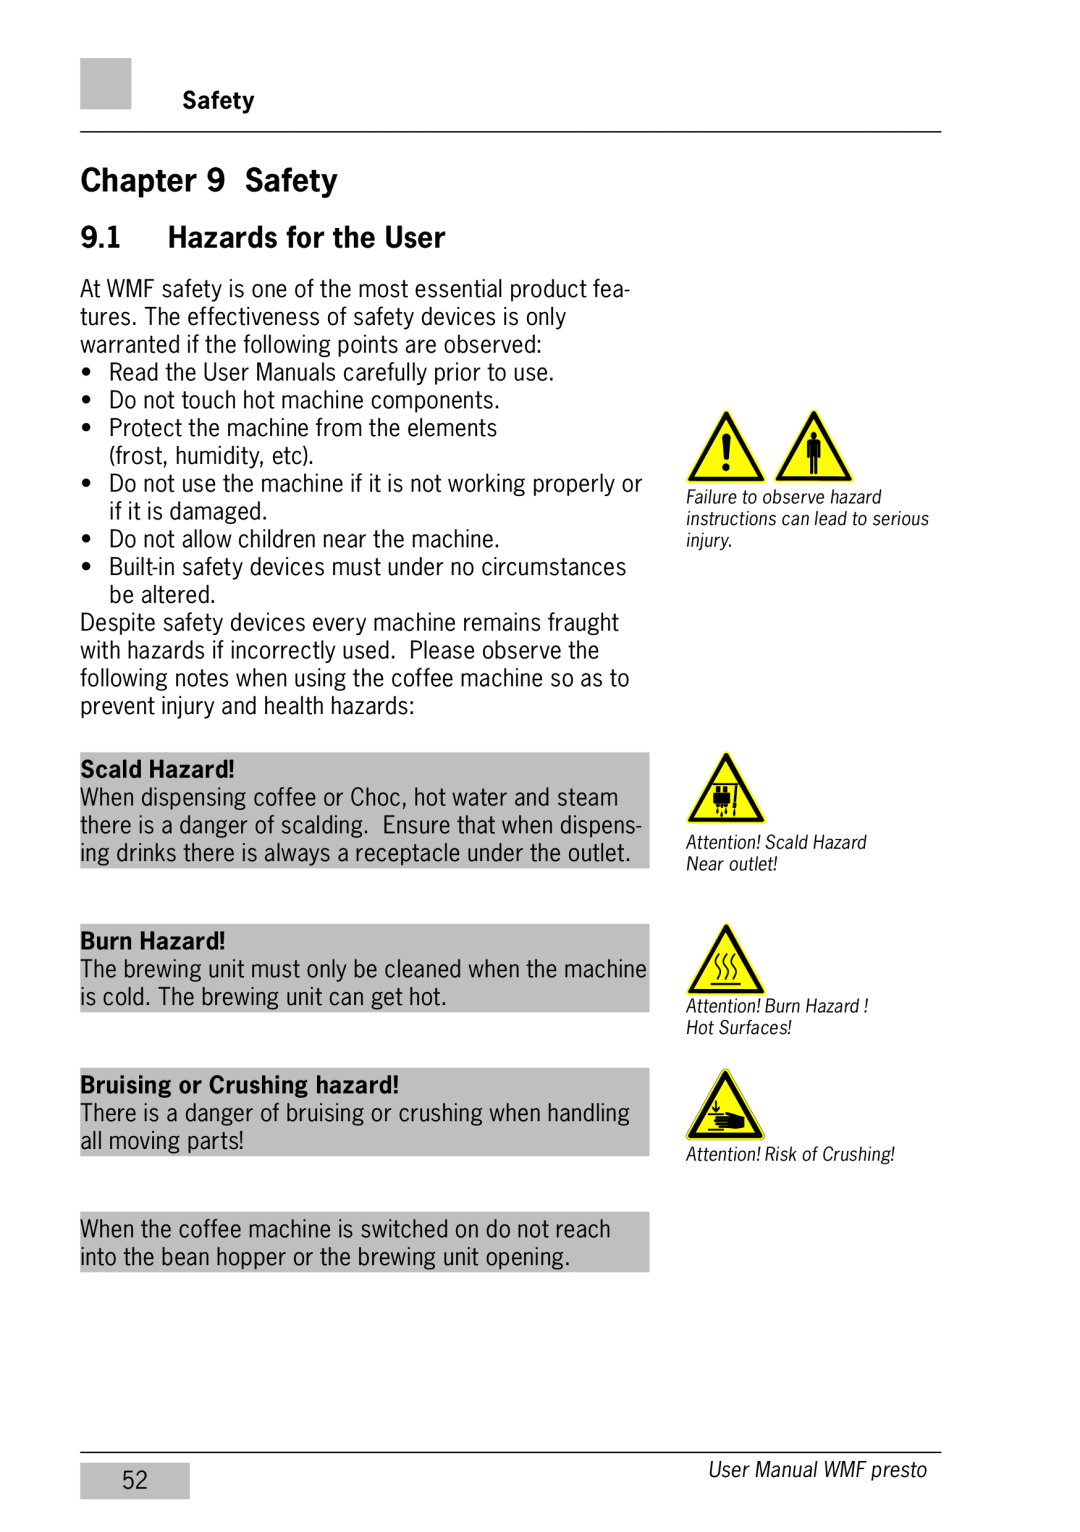 WMF Americas 1400 user manual Safety, Hazards for the User, Scald Hazard, Burn Hazard, Bruising or Crushing hazard 